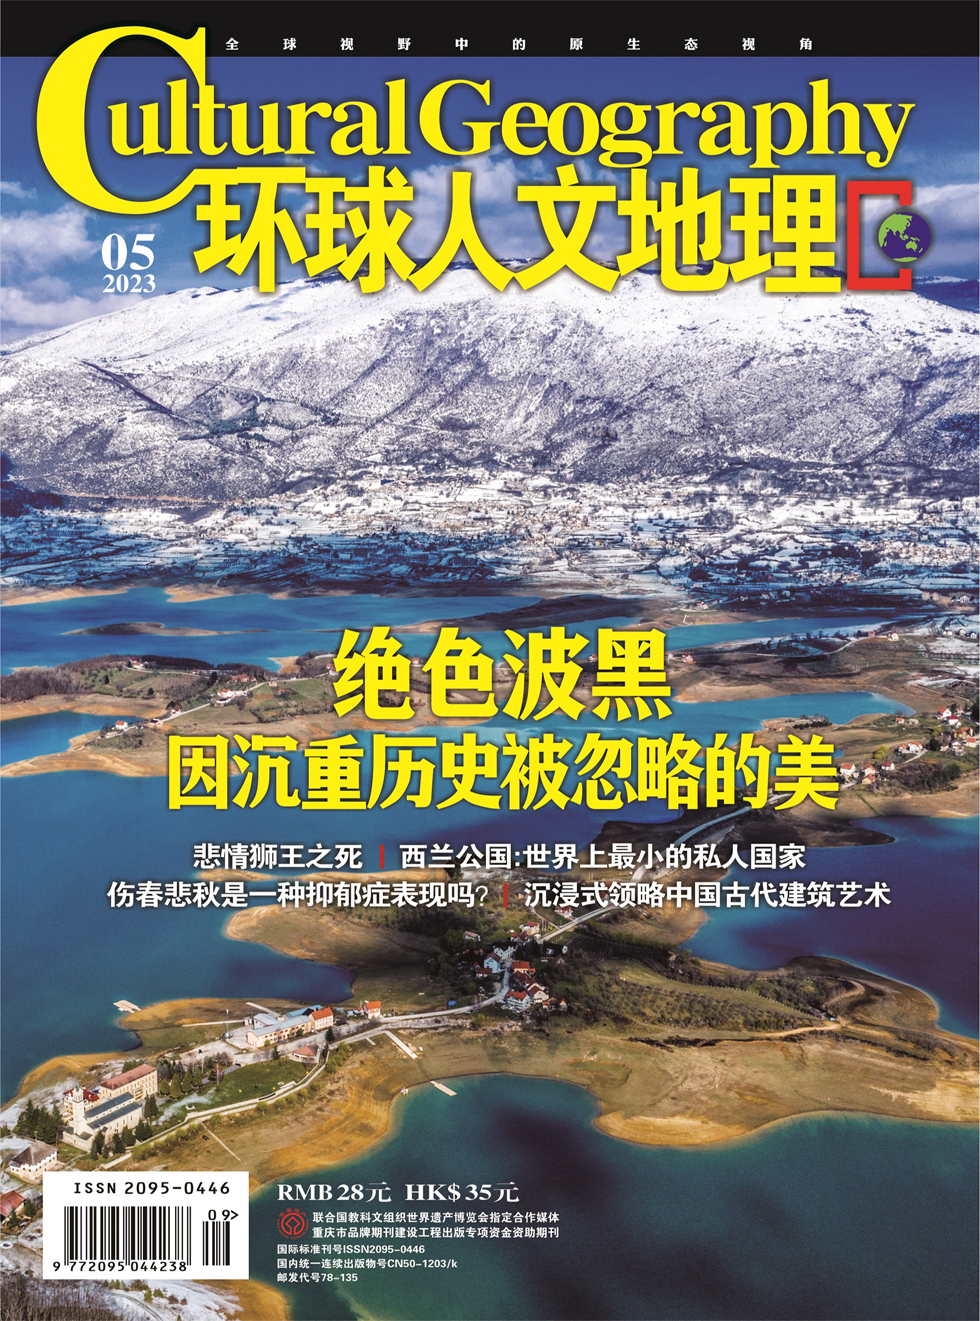 环球人文地理杂志封面